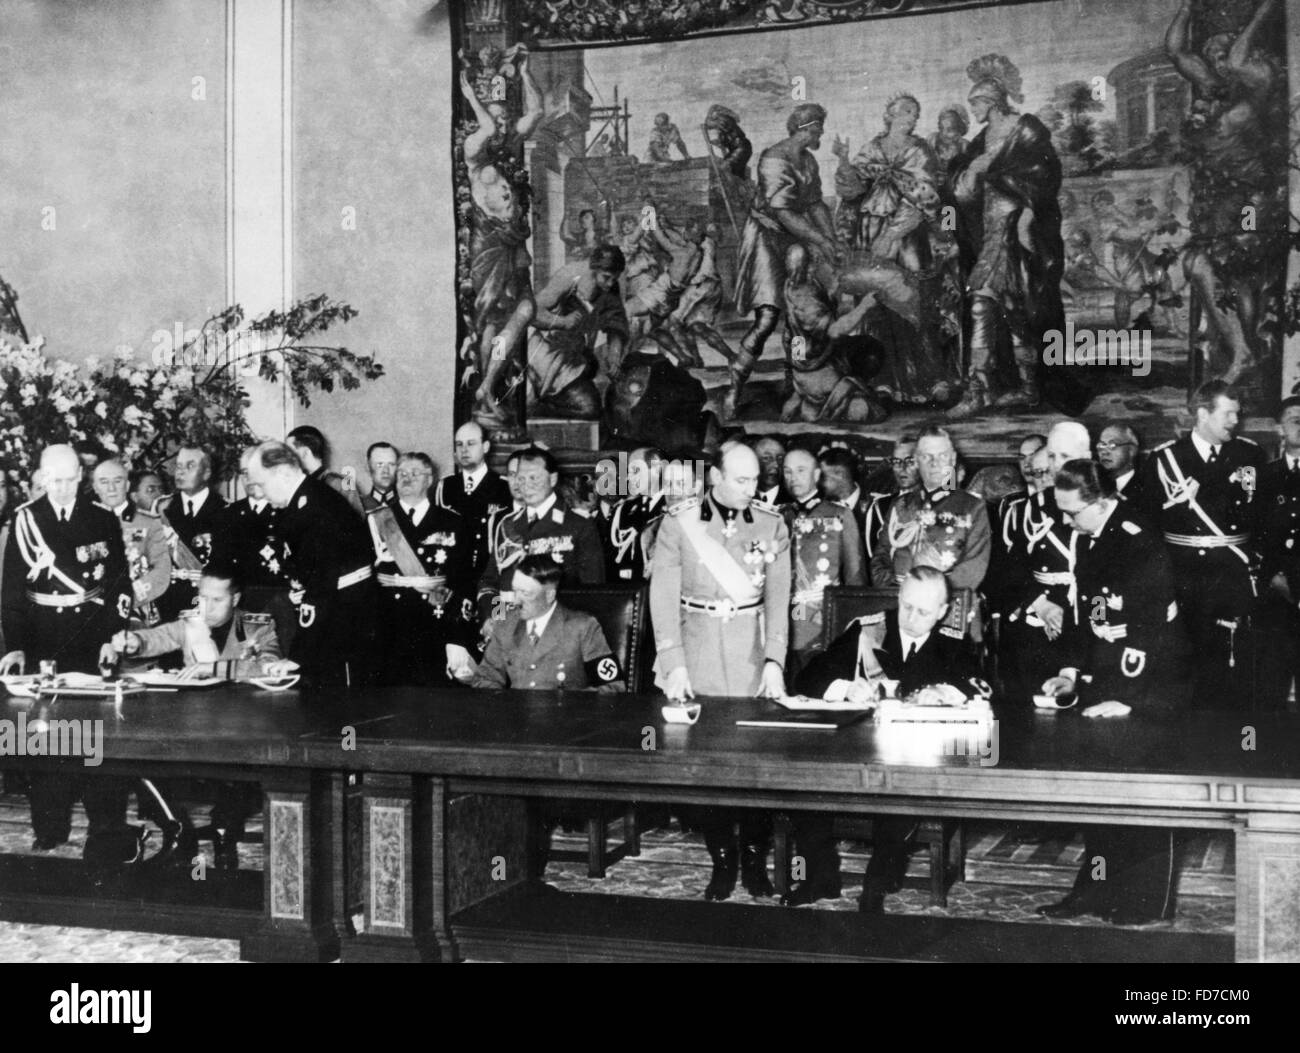 Ciano, Hitler et Ribbentrop signe le pacte de l'alliance germano-italien, 22.05.1939 Banque D'Images